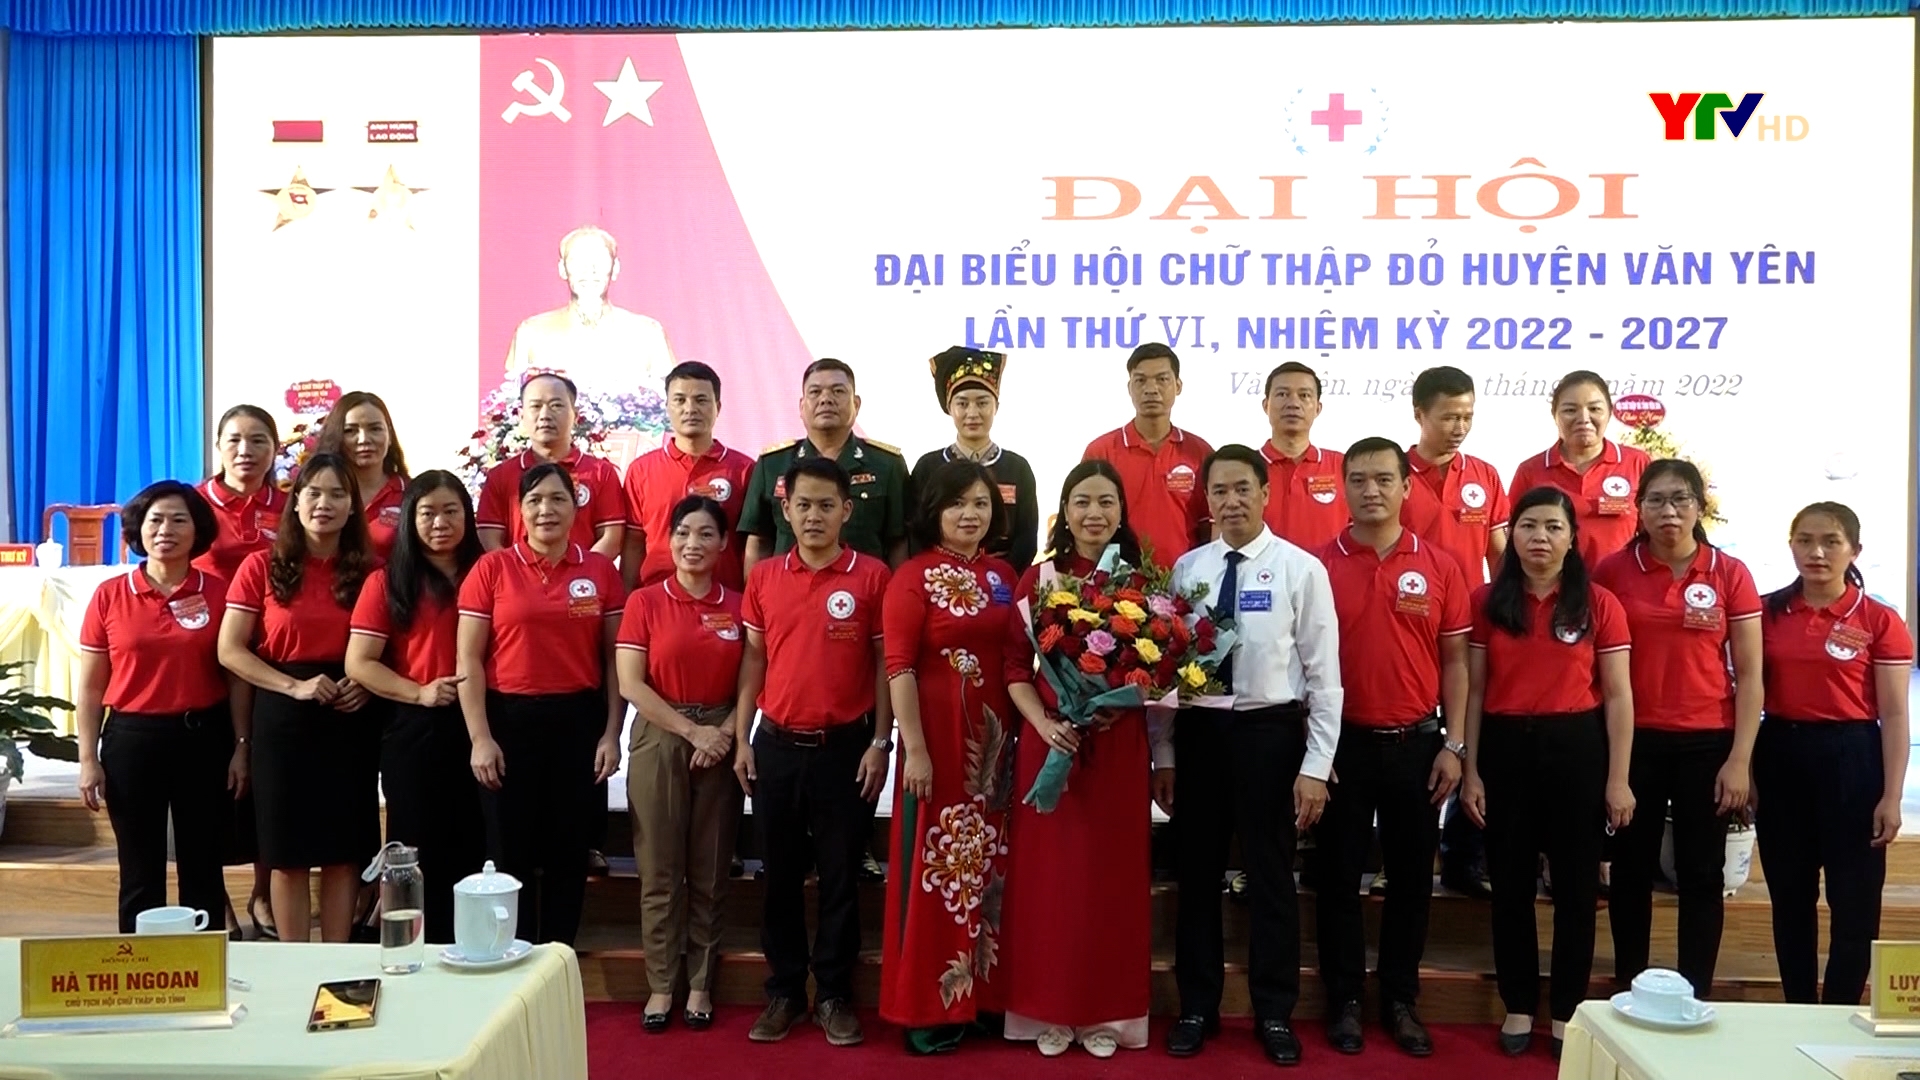 Hội Chữ thập đỏ huyện Văn Yên tổ chức thành công Đại hội đại biểu nhiệm kỳ 2022 – 2027